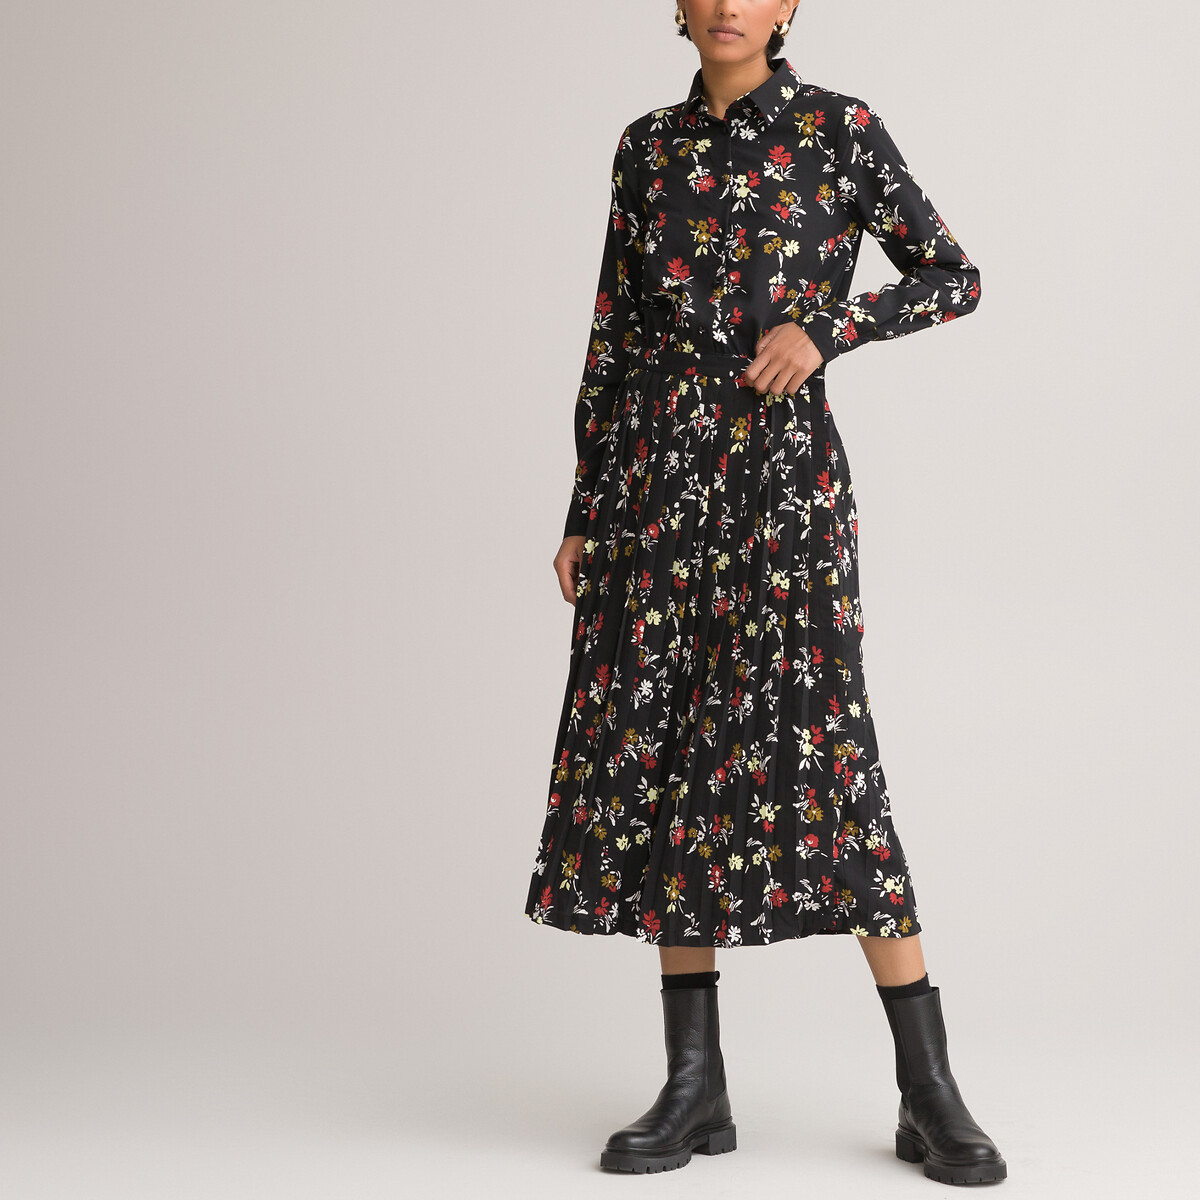 Платье-рубашка LaRedoute С низом с плиссировкой и цветочным принтом 54 черный, размер 54 - фото 1